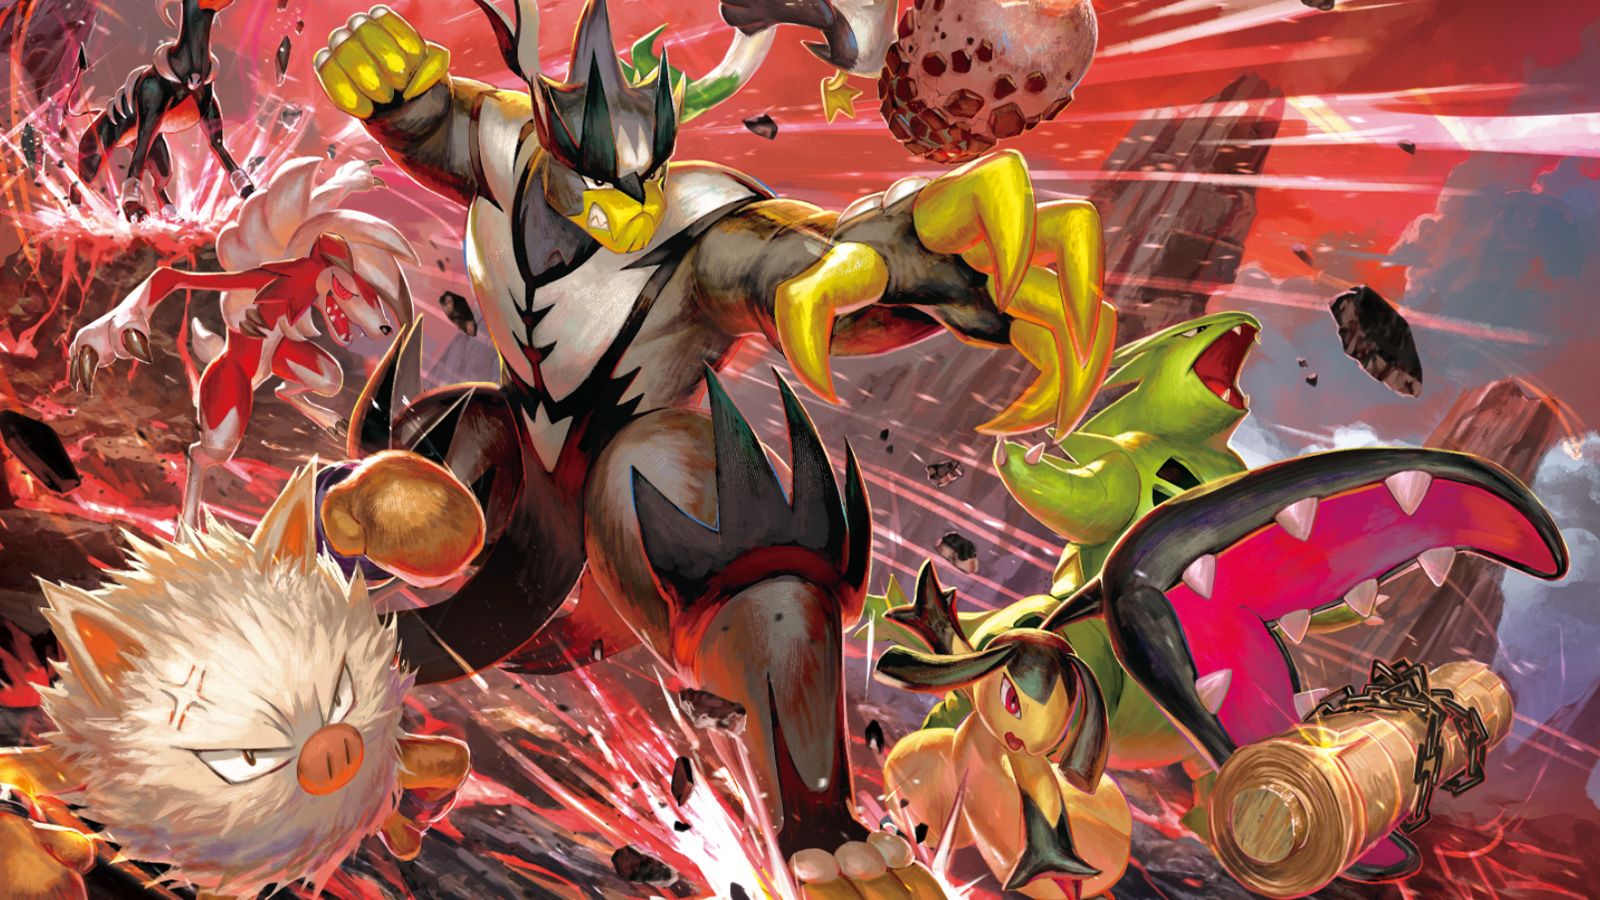 Promozionale per l'espansione del gioco di carte collezionabili Pokemon Battle Styles con il leggendario Urshifu.